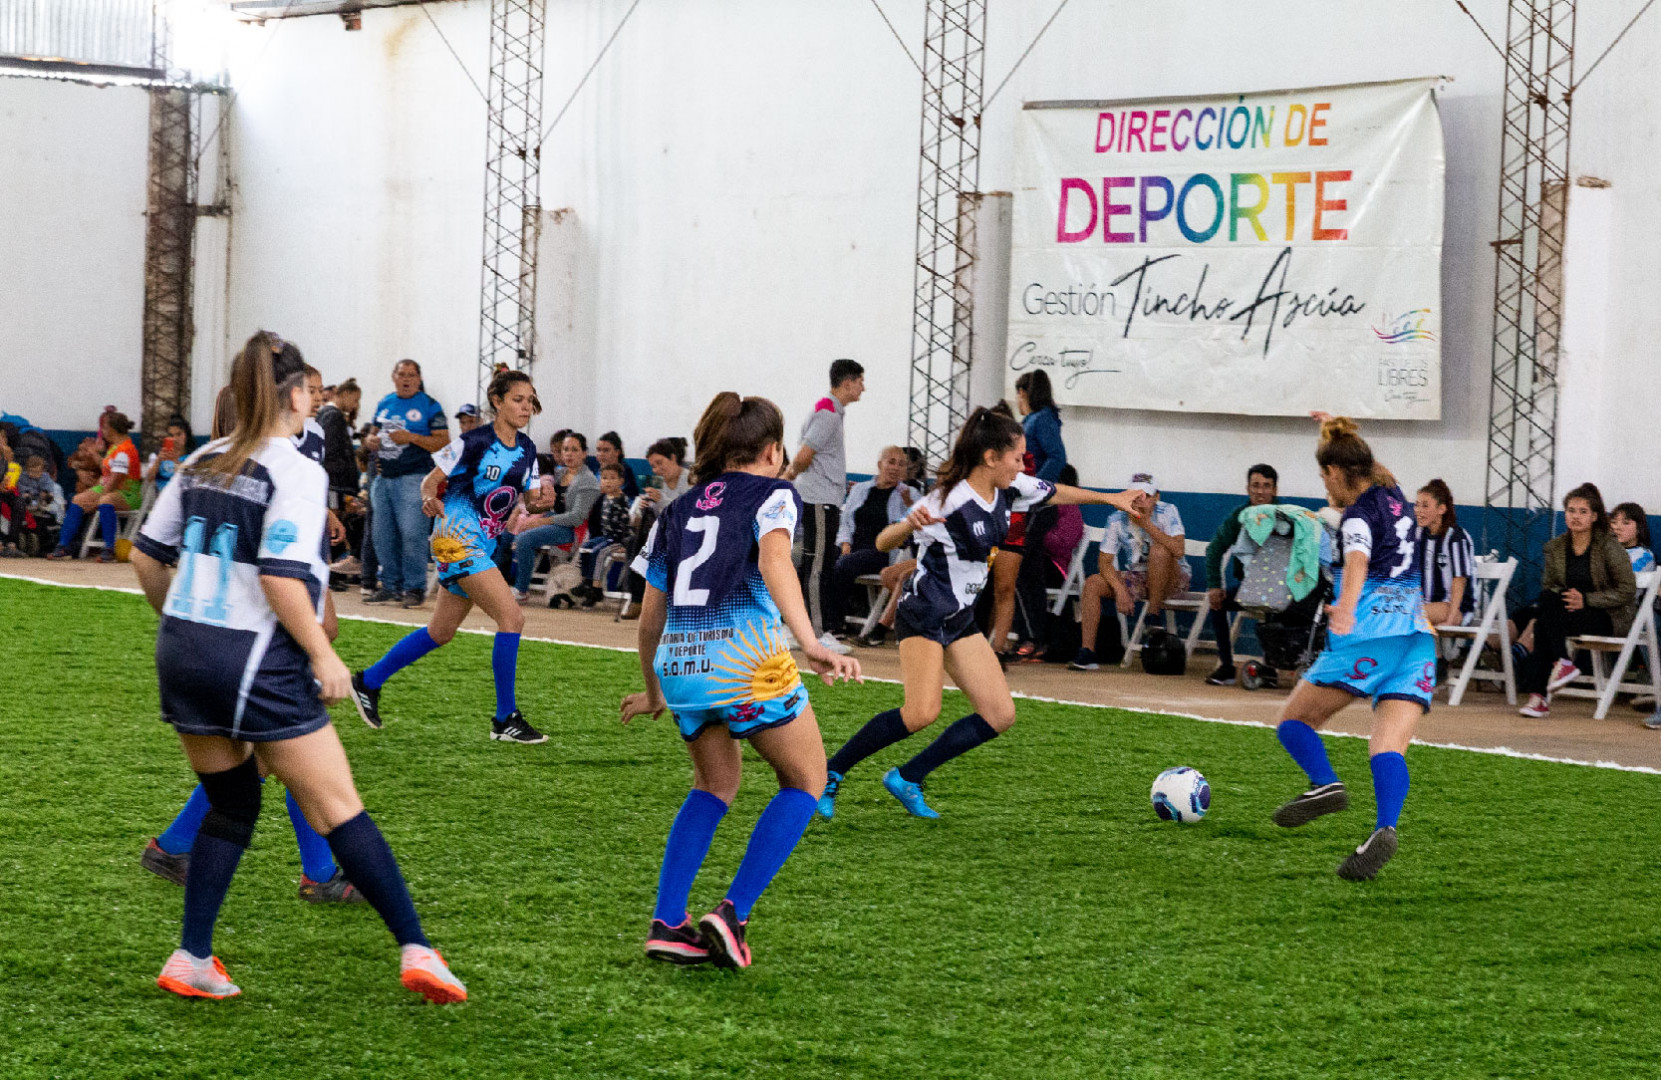 Partido de futbol en Corrientes, Reconstruyen2 Juventudes Solidarias